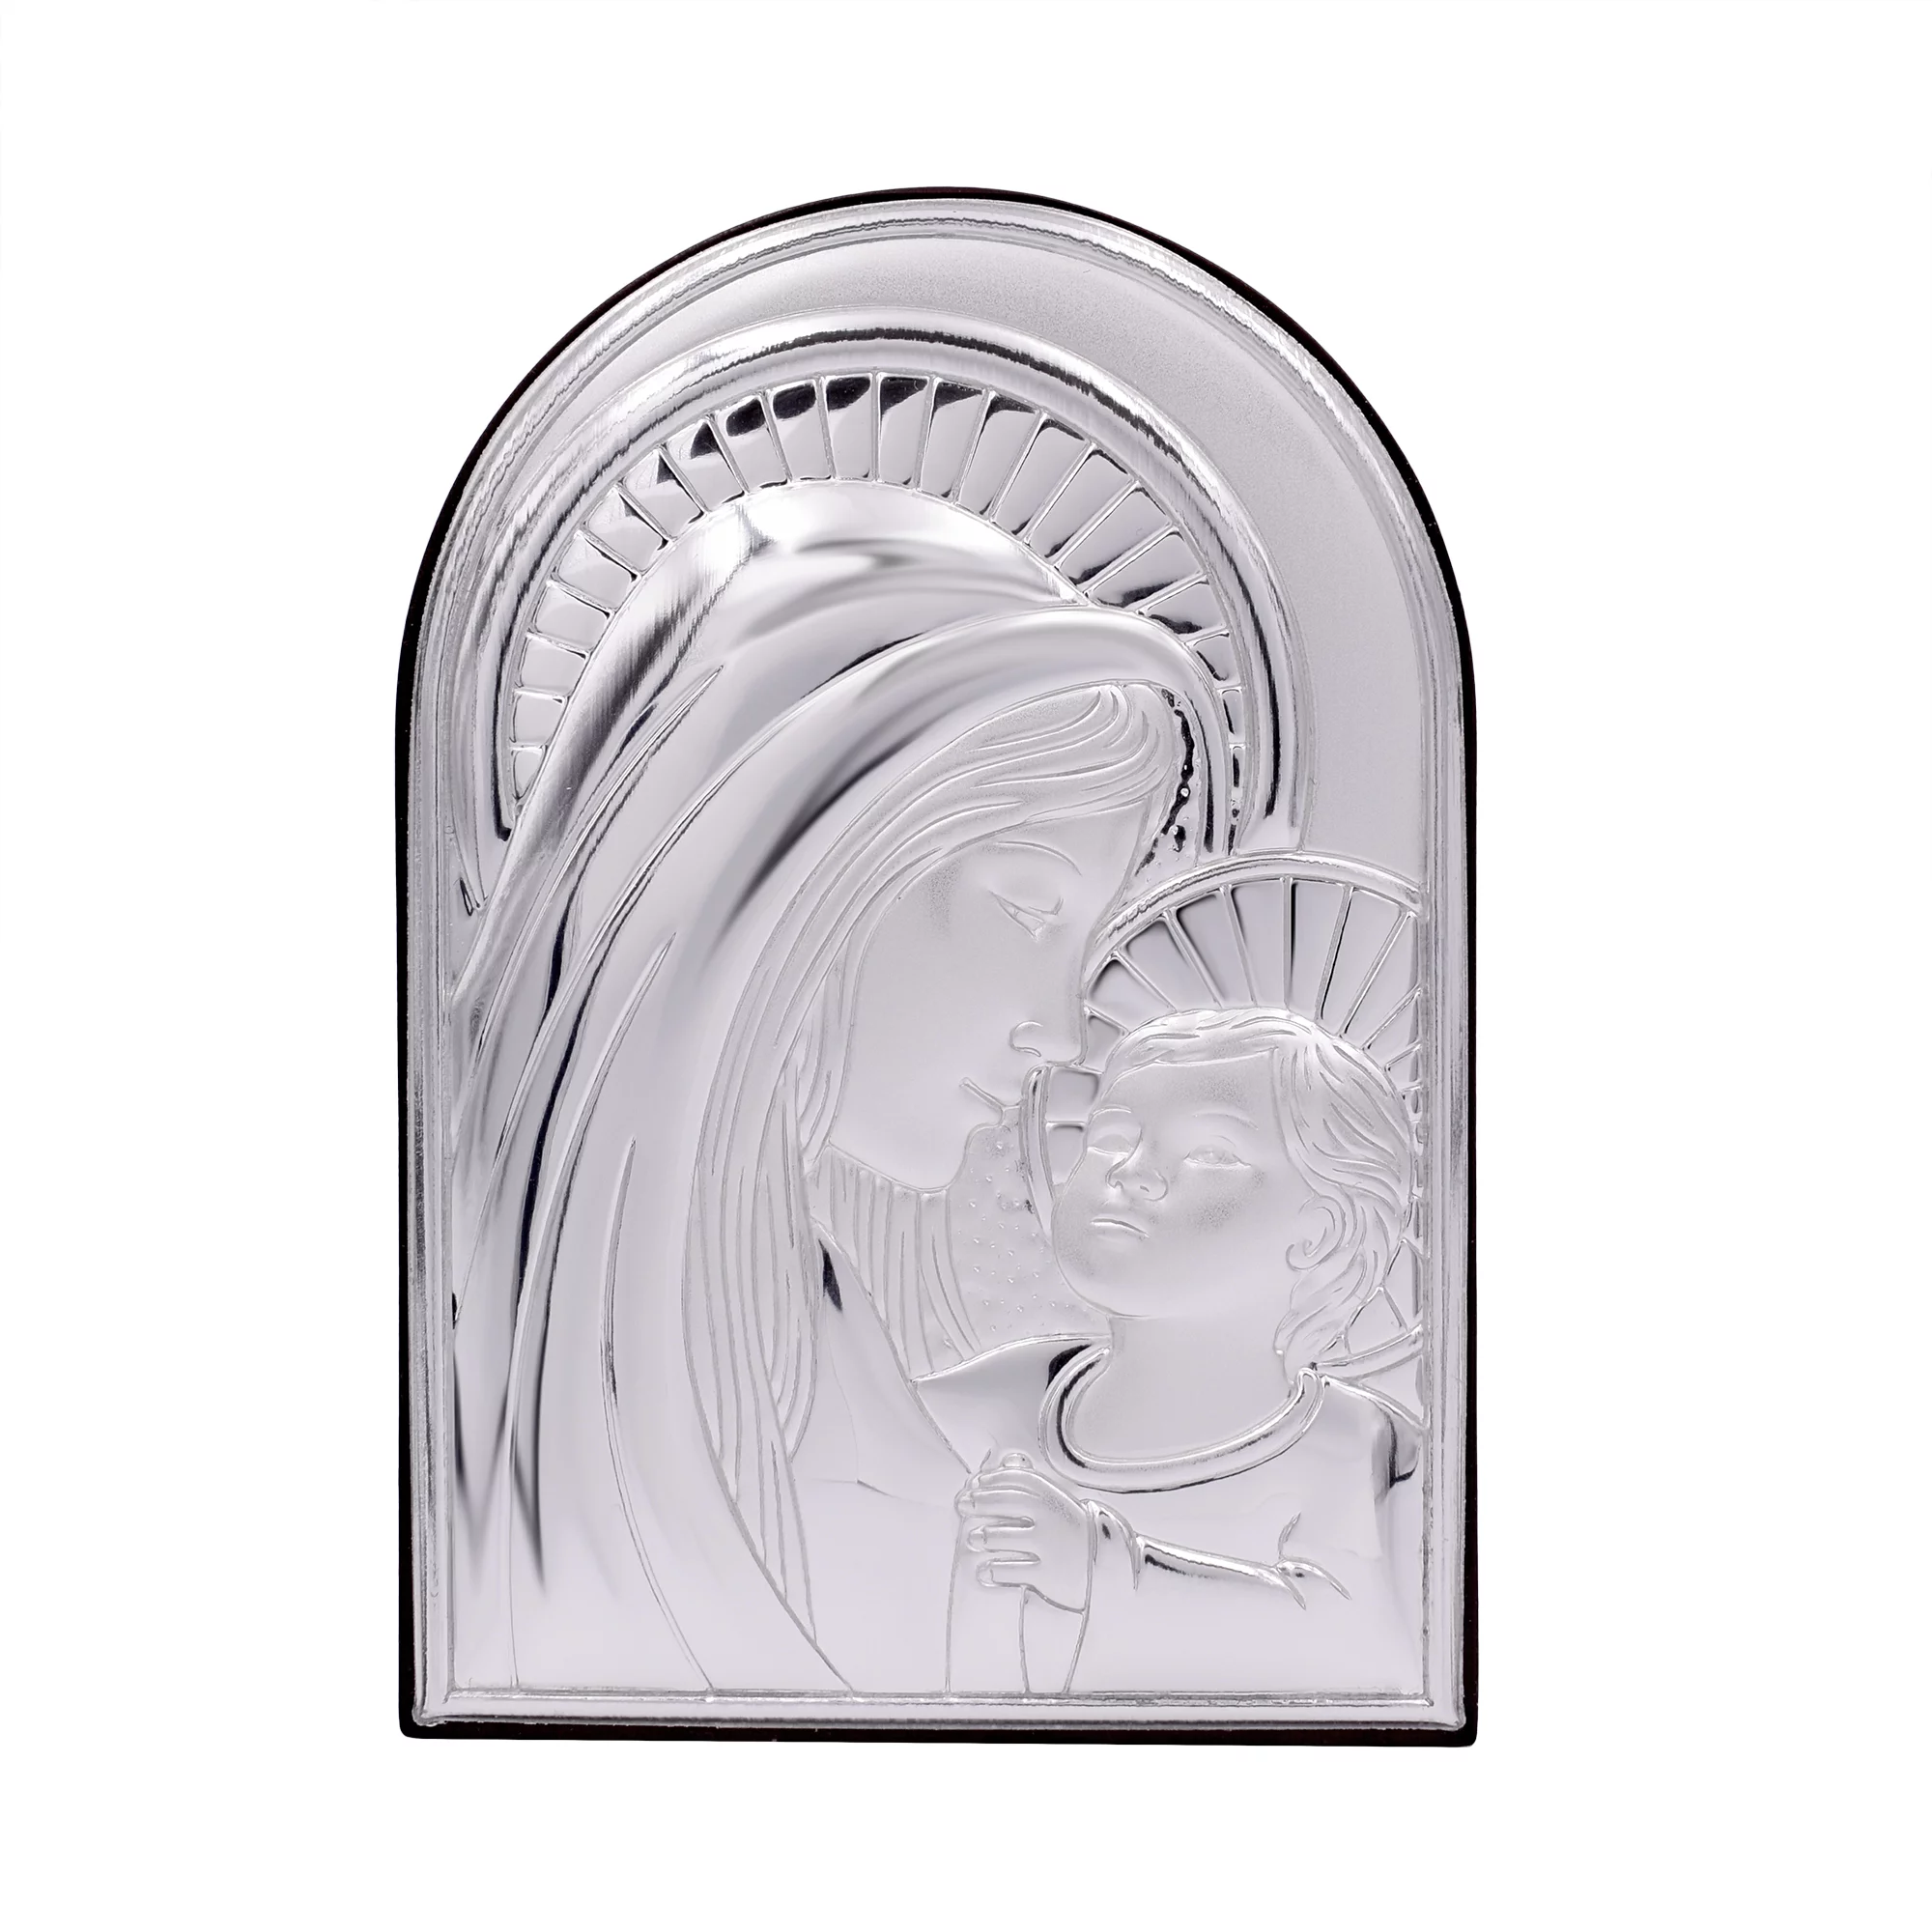 Икона "Богородица с младенцем" - 964541 – изображение 1